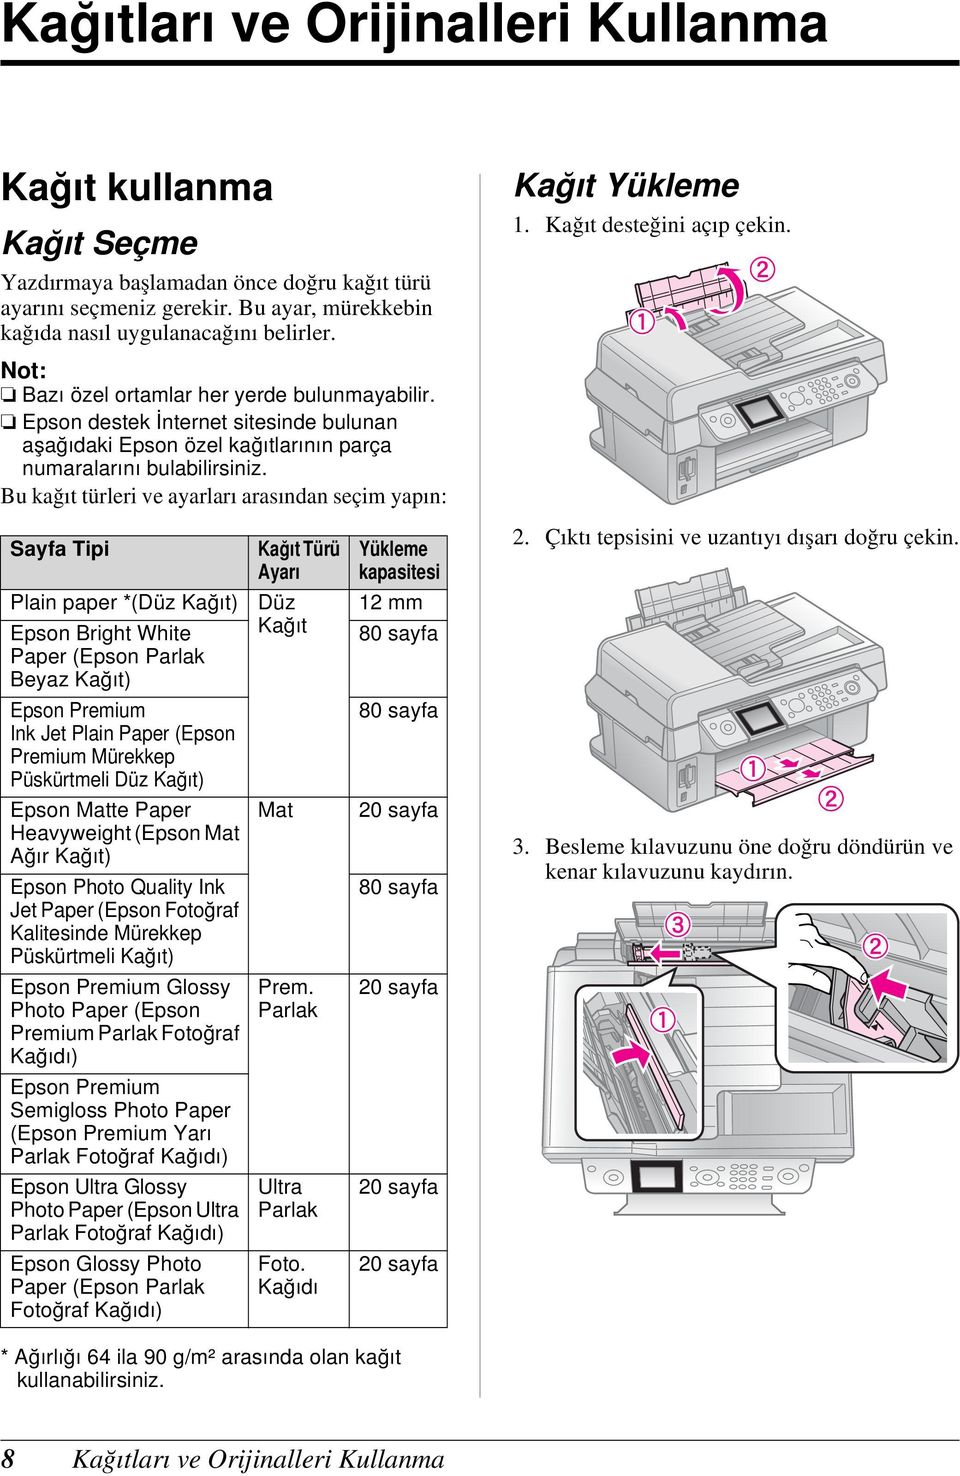 Bu kağıt türleri ve ayarları arasından seçim yapın: Kağıt Yükleme 1. Kağıt desteğini açıp çekin. Sayfa Tipi Kağıt Türü Ayarı Yükleme kapasitesi 2. Çıktı tepsisini ve uzantıyı dışarı doğru çekin.